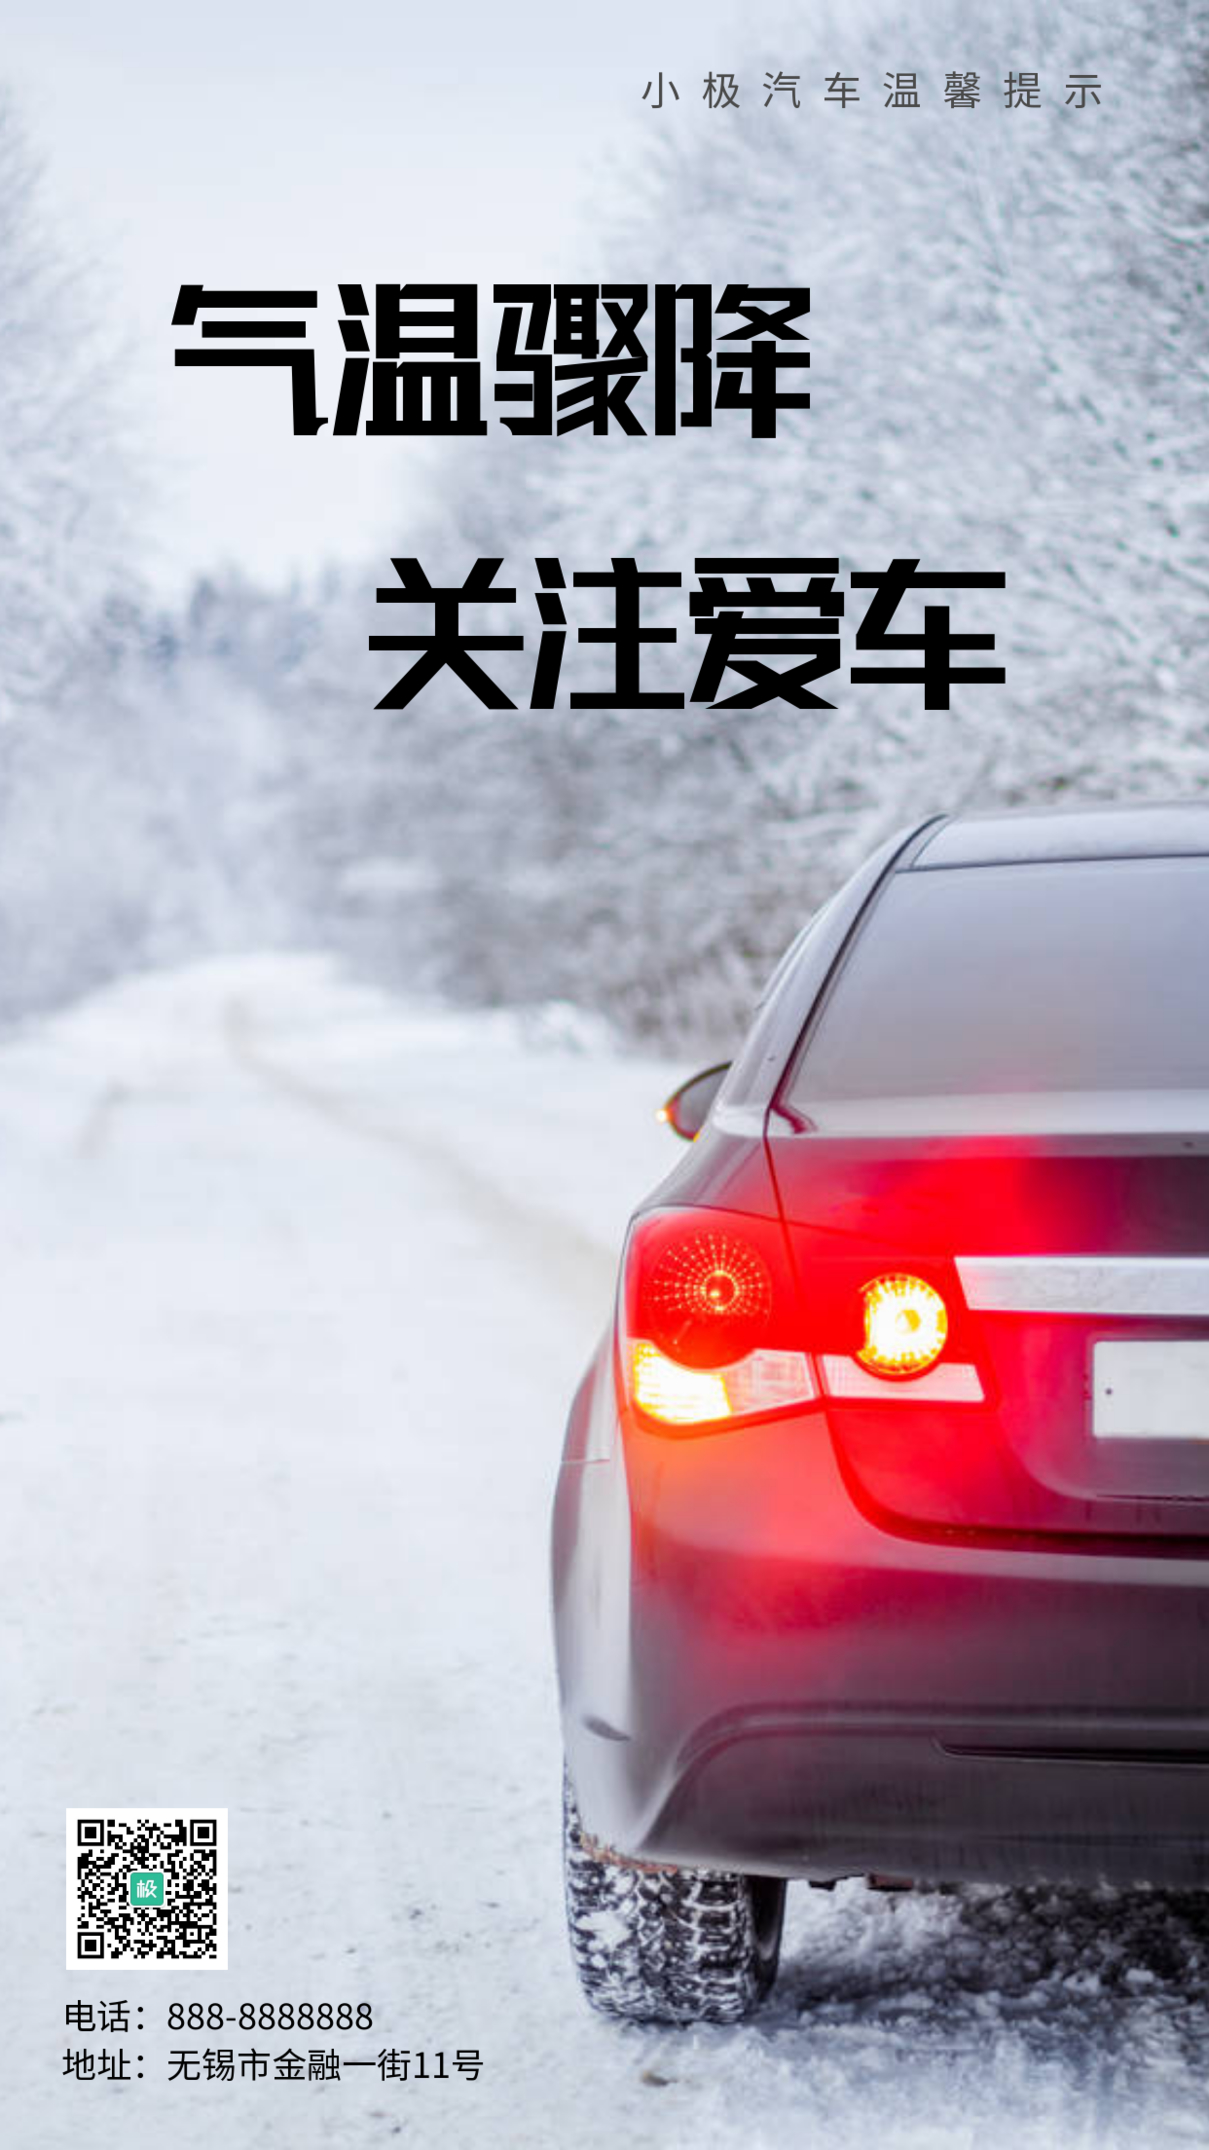 汽车销售提醒气温骤降白色雪地手机海报